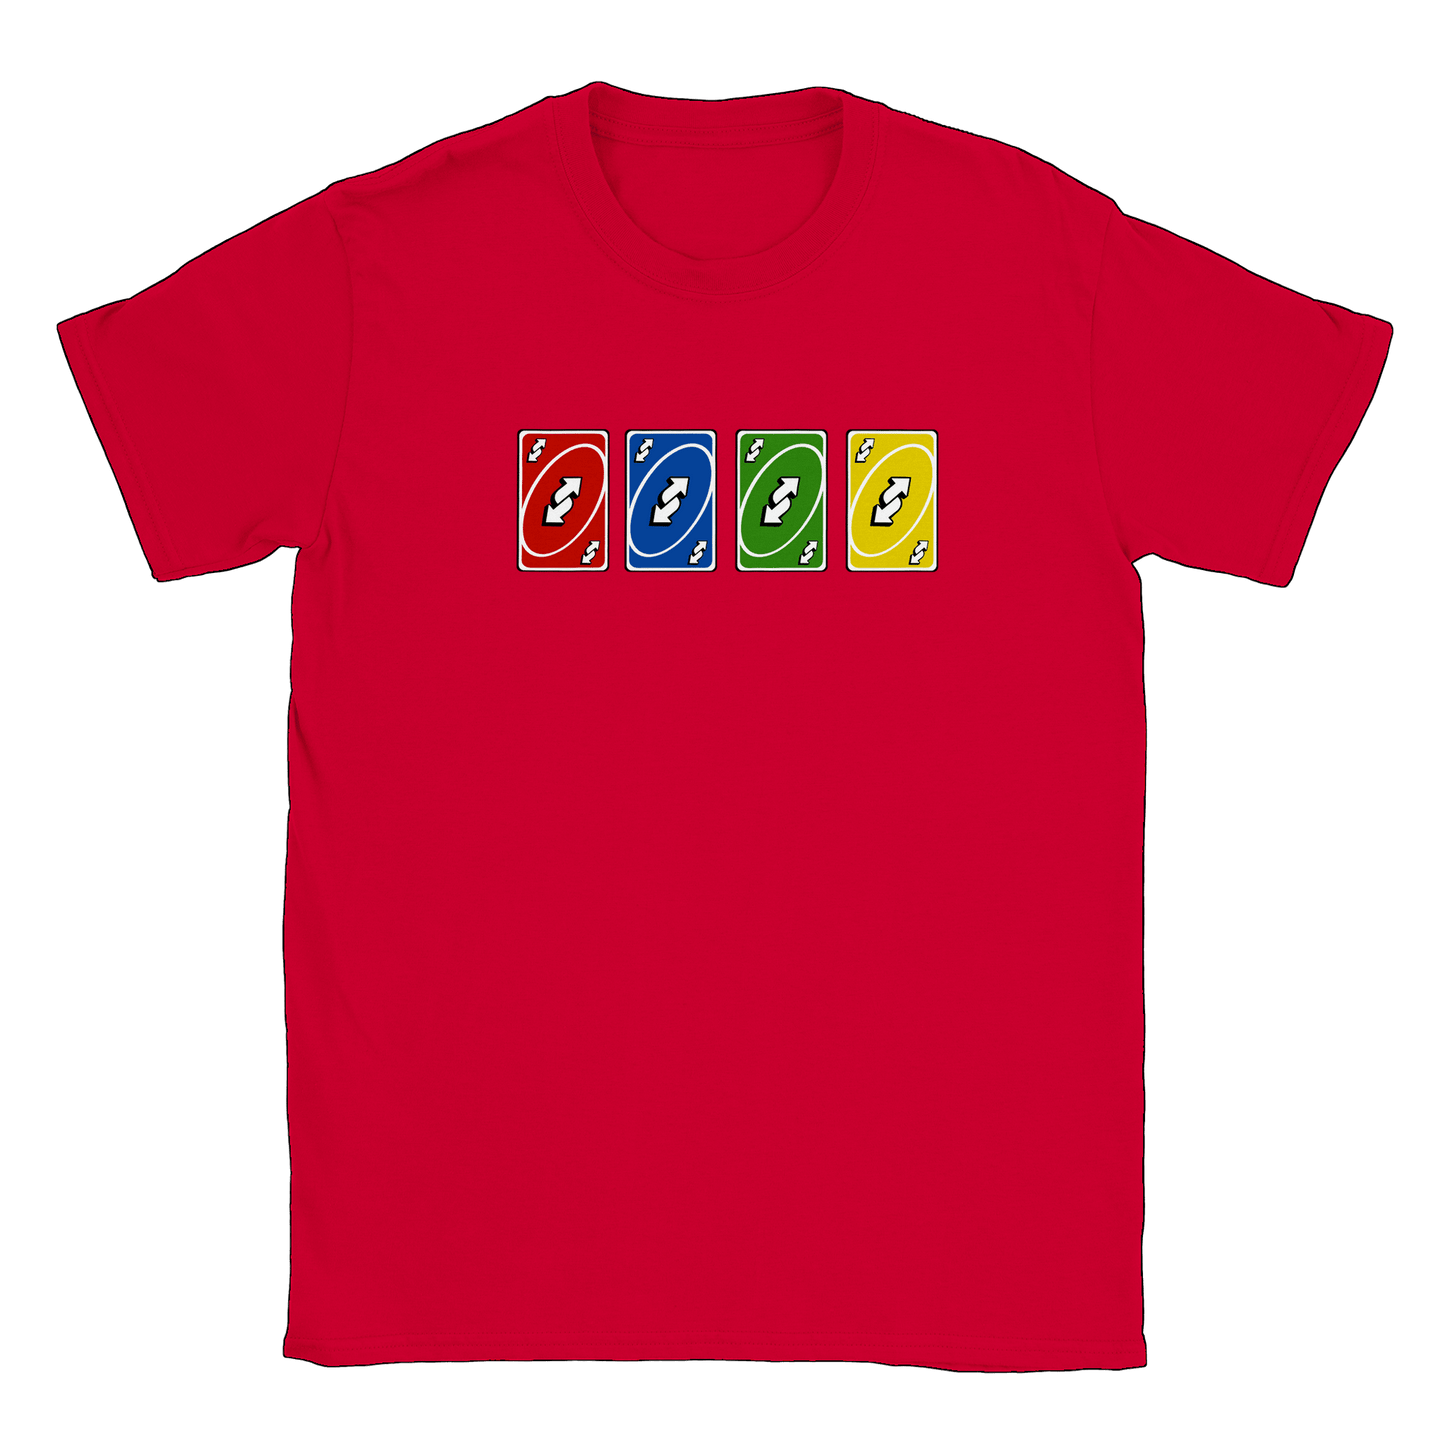 Vändkort alla färger - T-shirt Röd